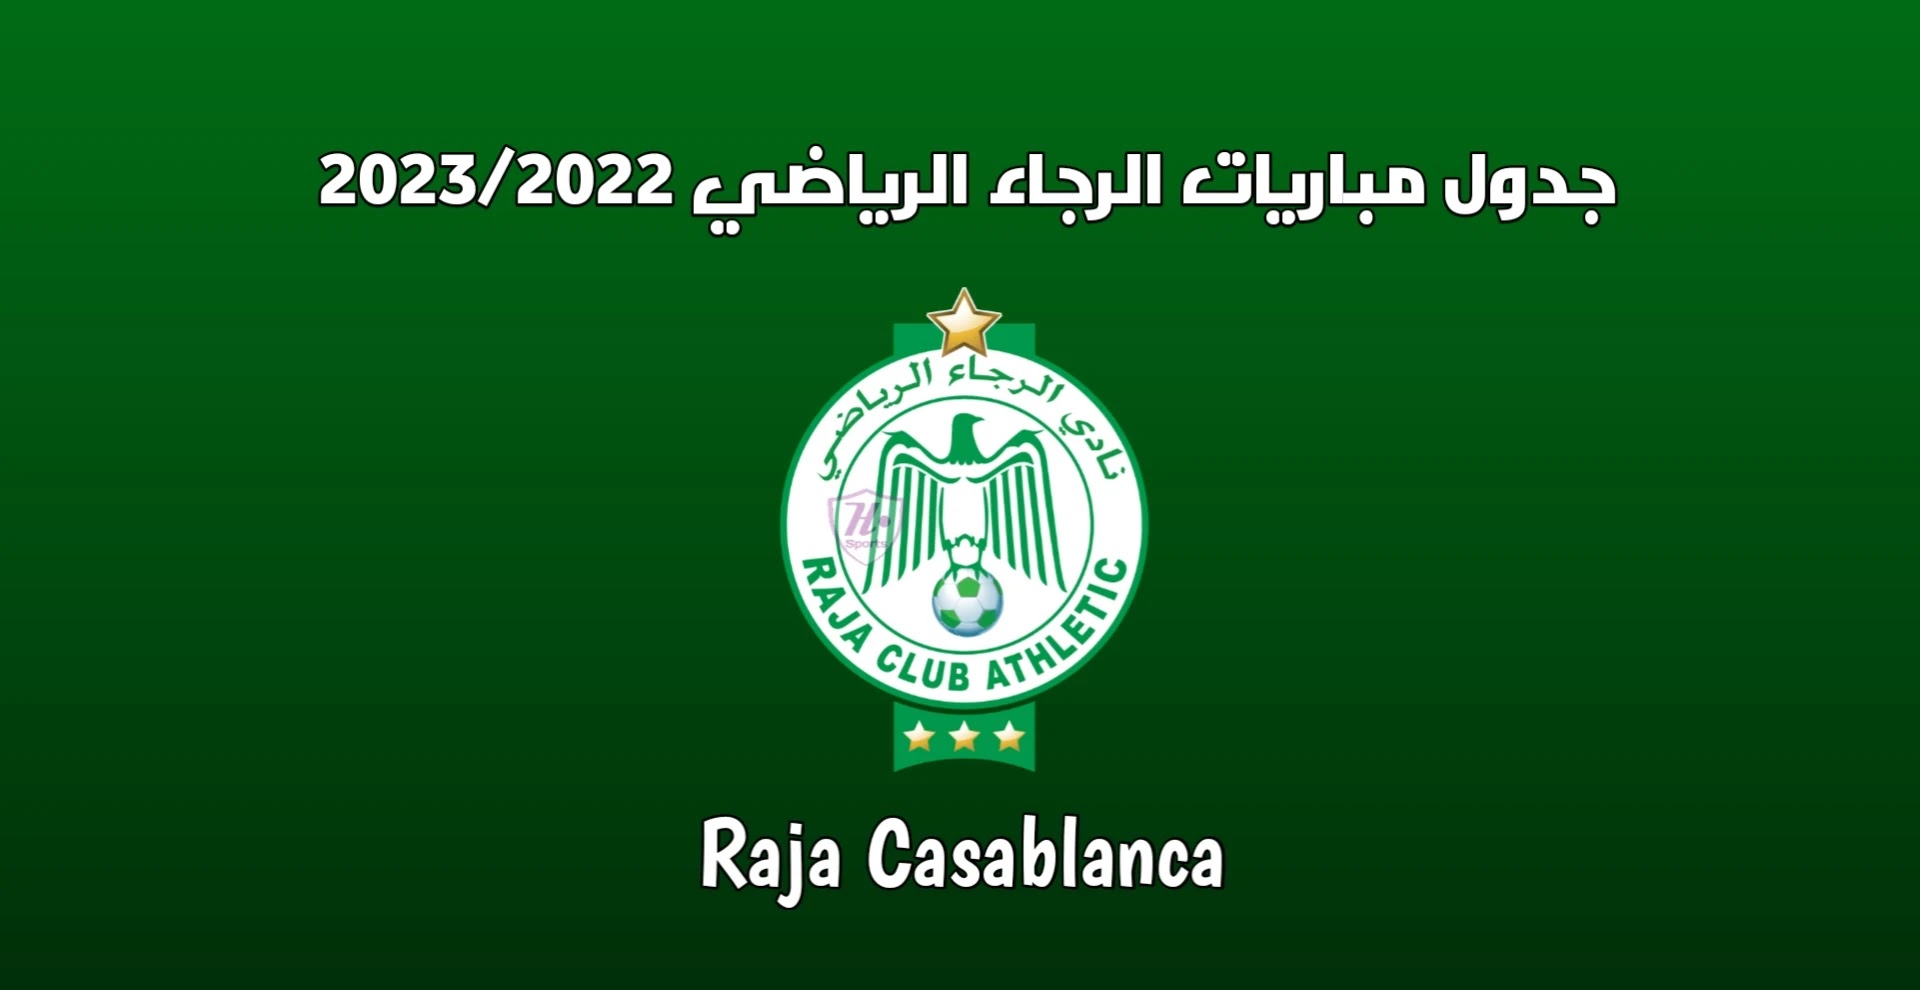 Raja Casablanca matches schedule 2023